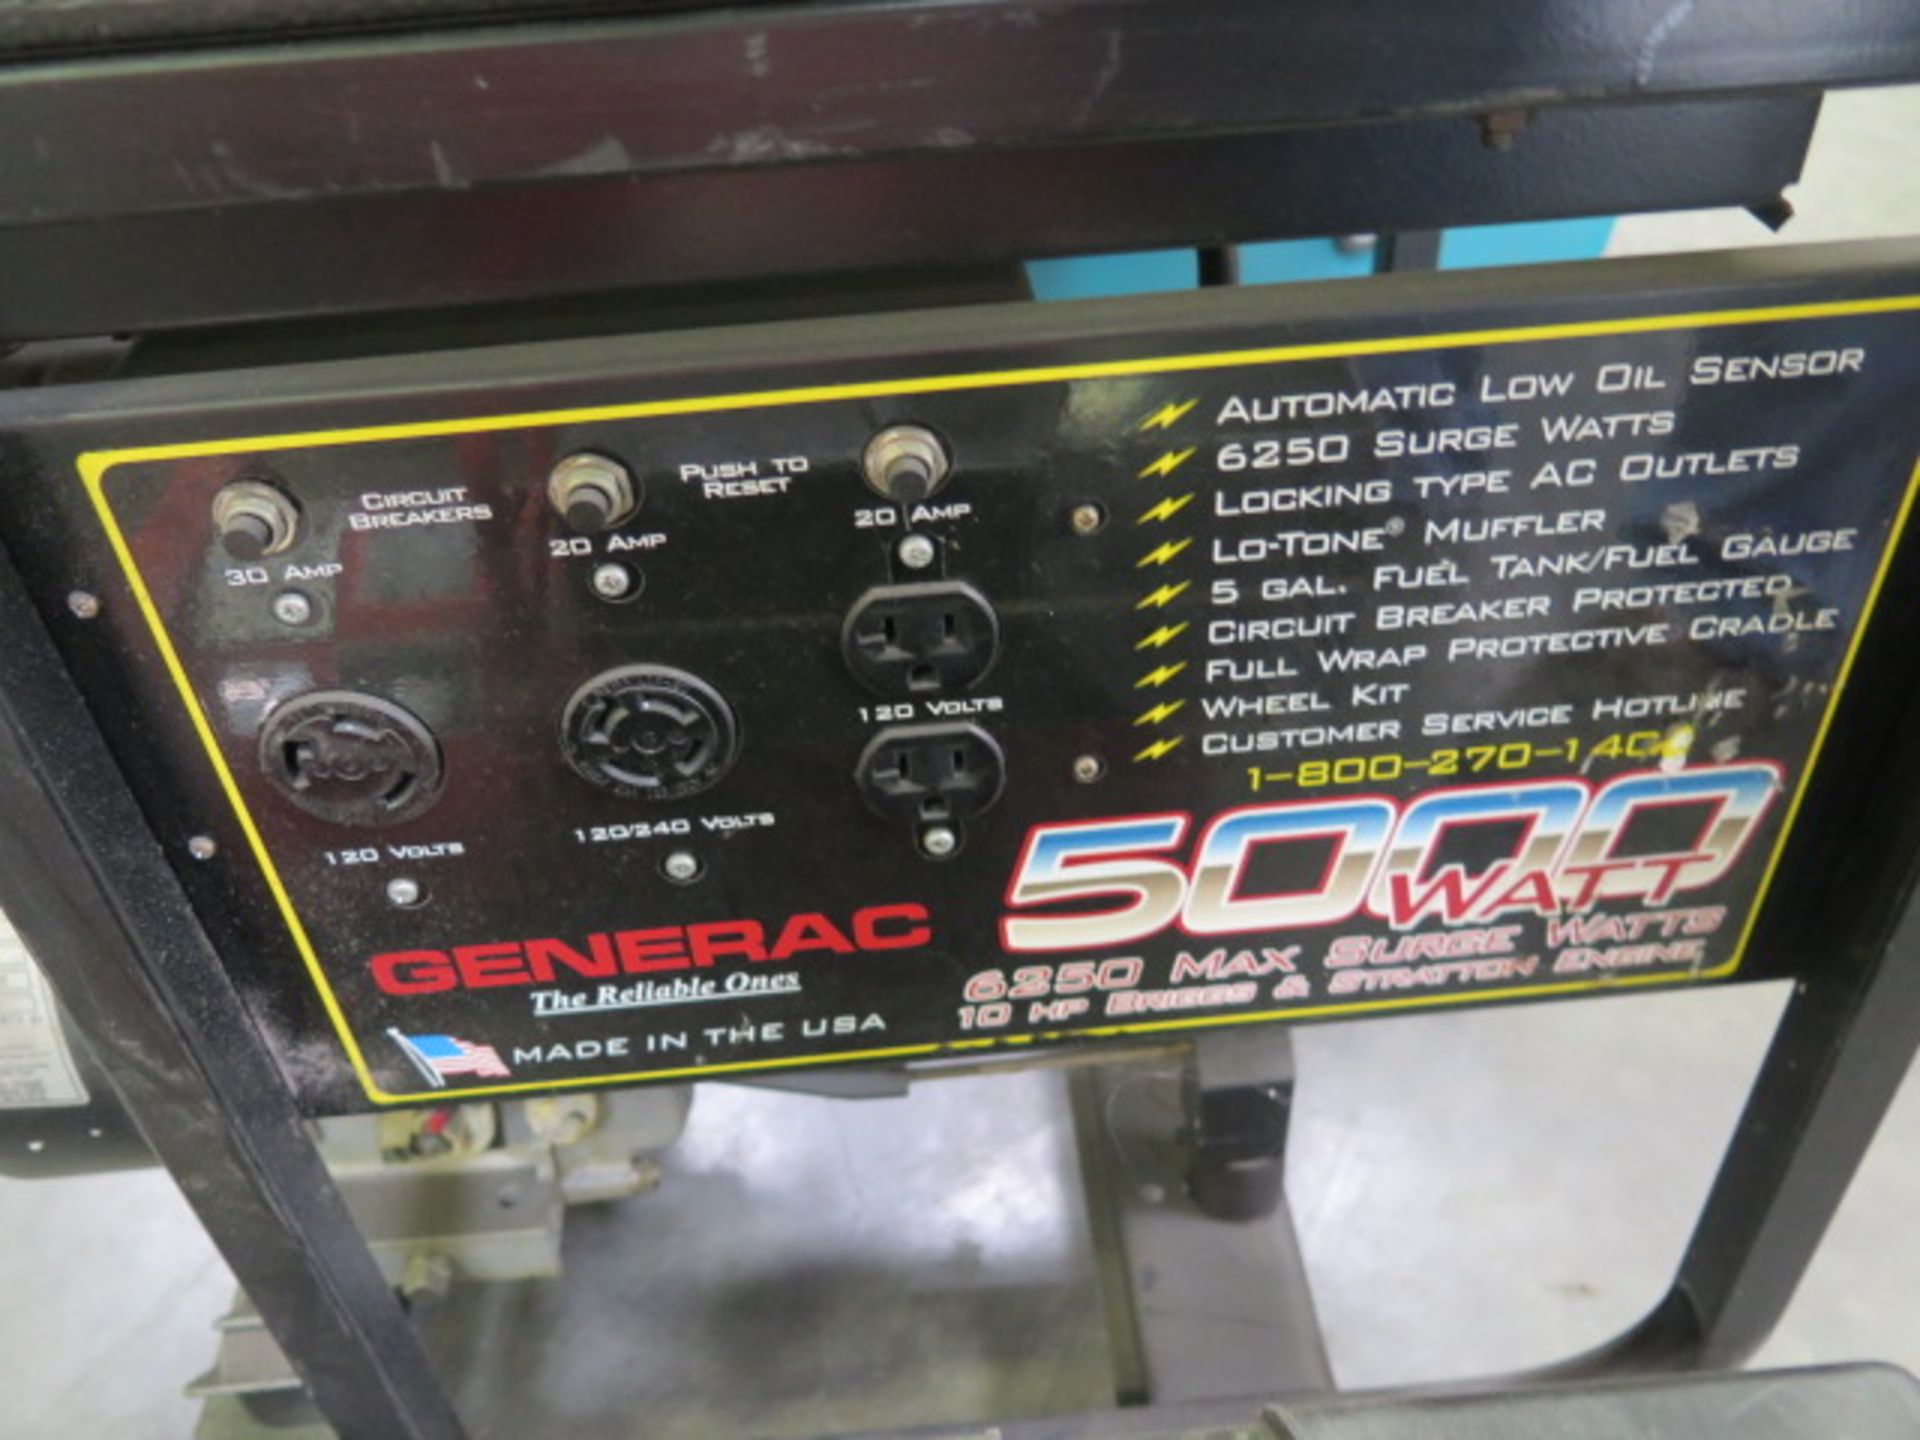 Generac 5000 Watt Portable Generator - Image 3 of 5